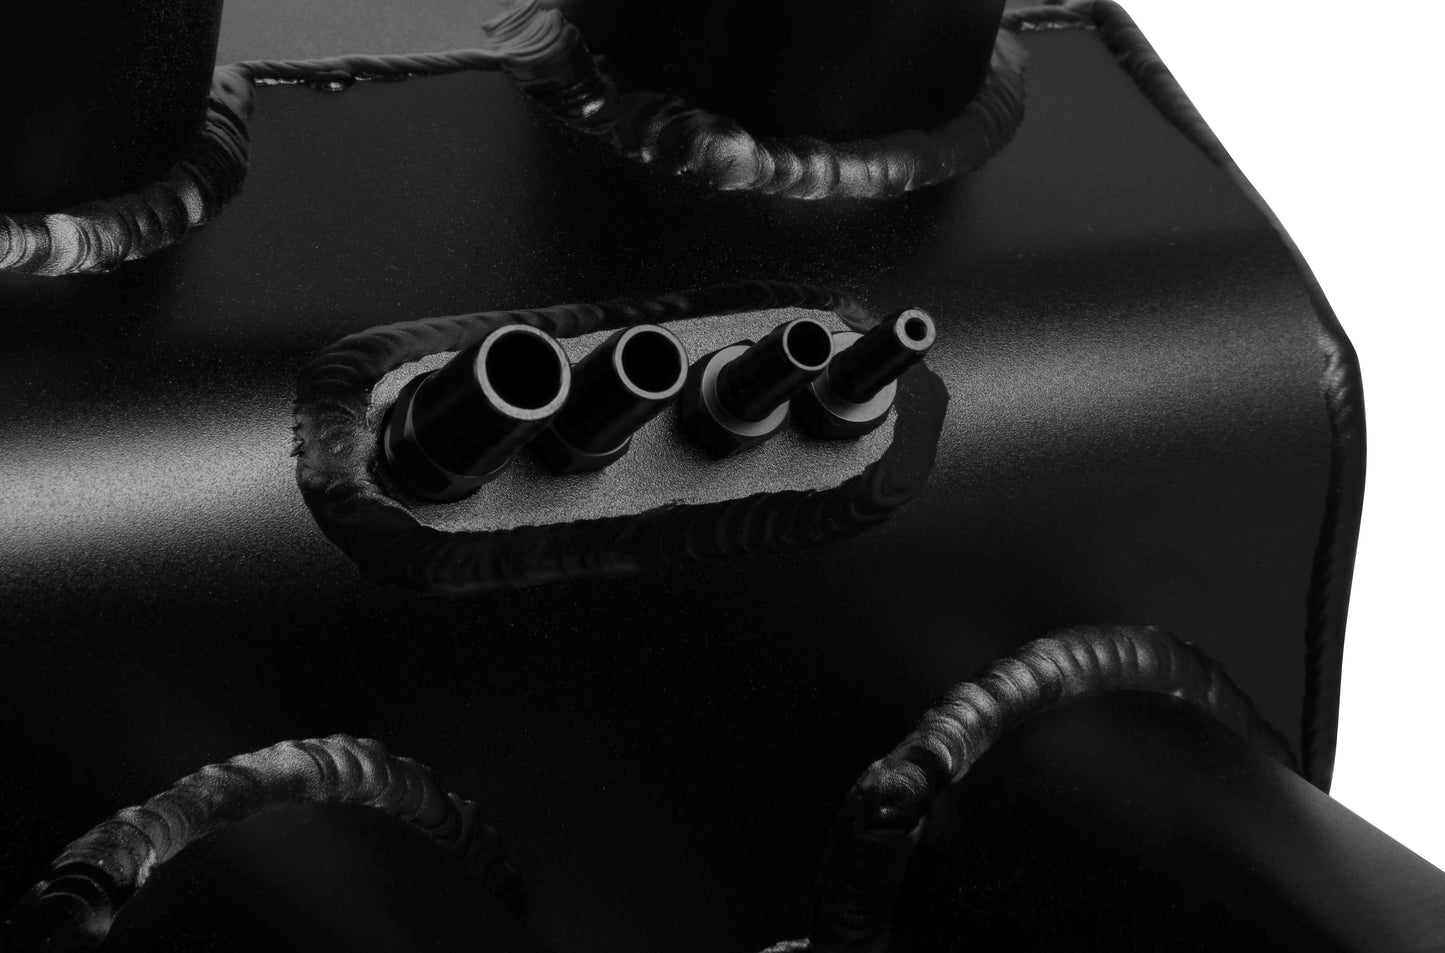 Holley EFI 820032-1 Sniper Hi-Ram Fabricated Intake Manifold